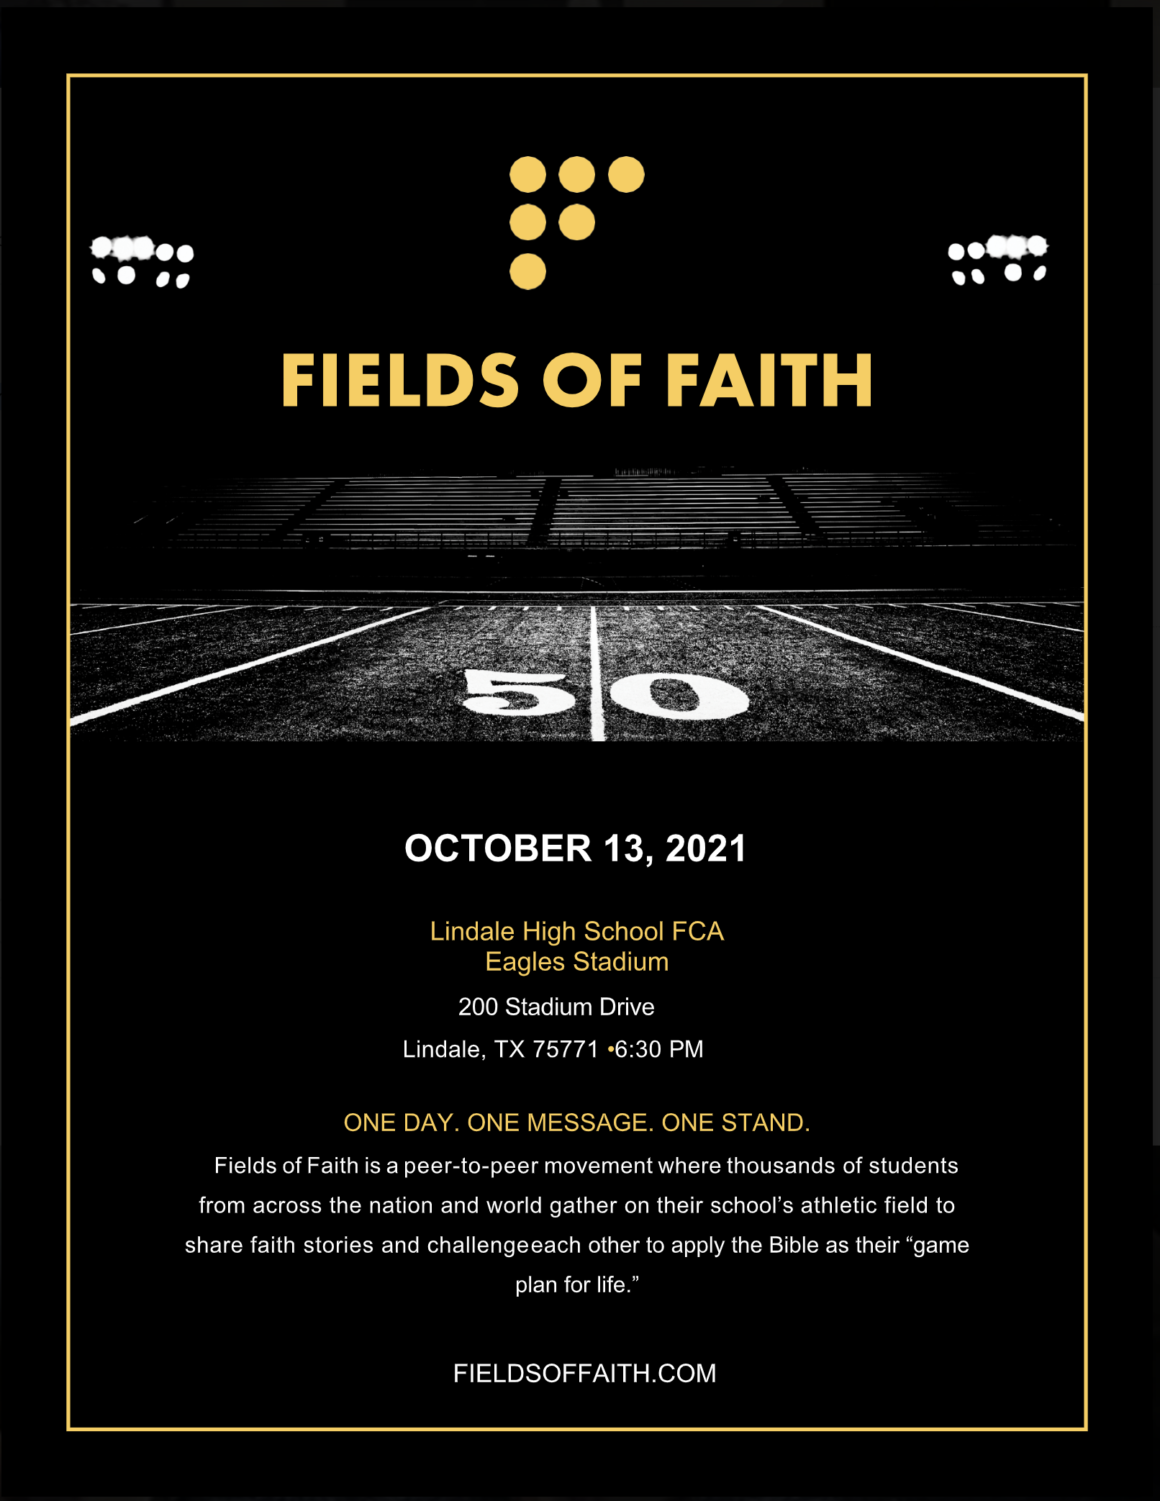 The flyer for fields of faith.